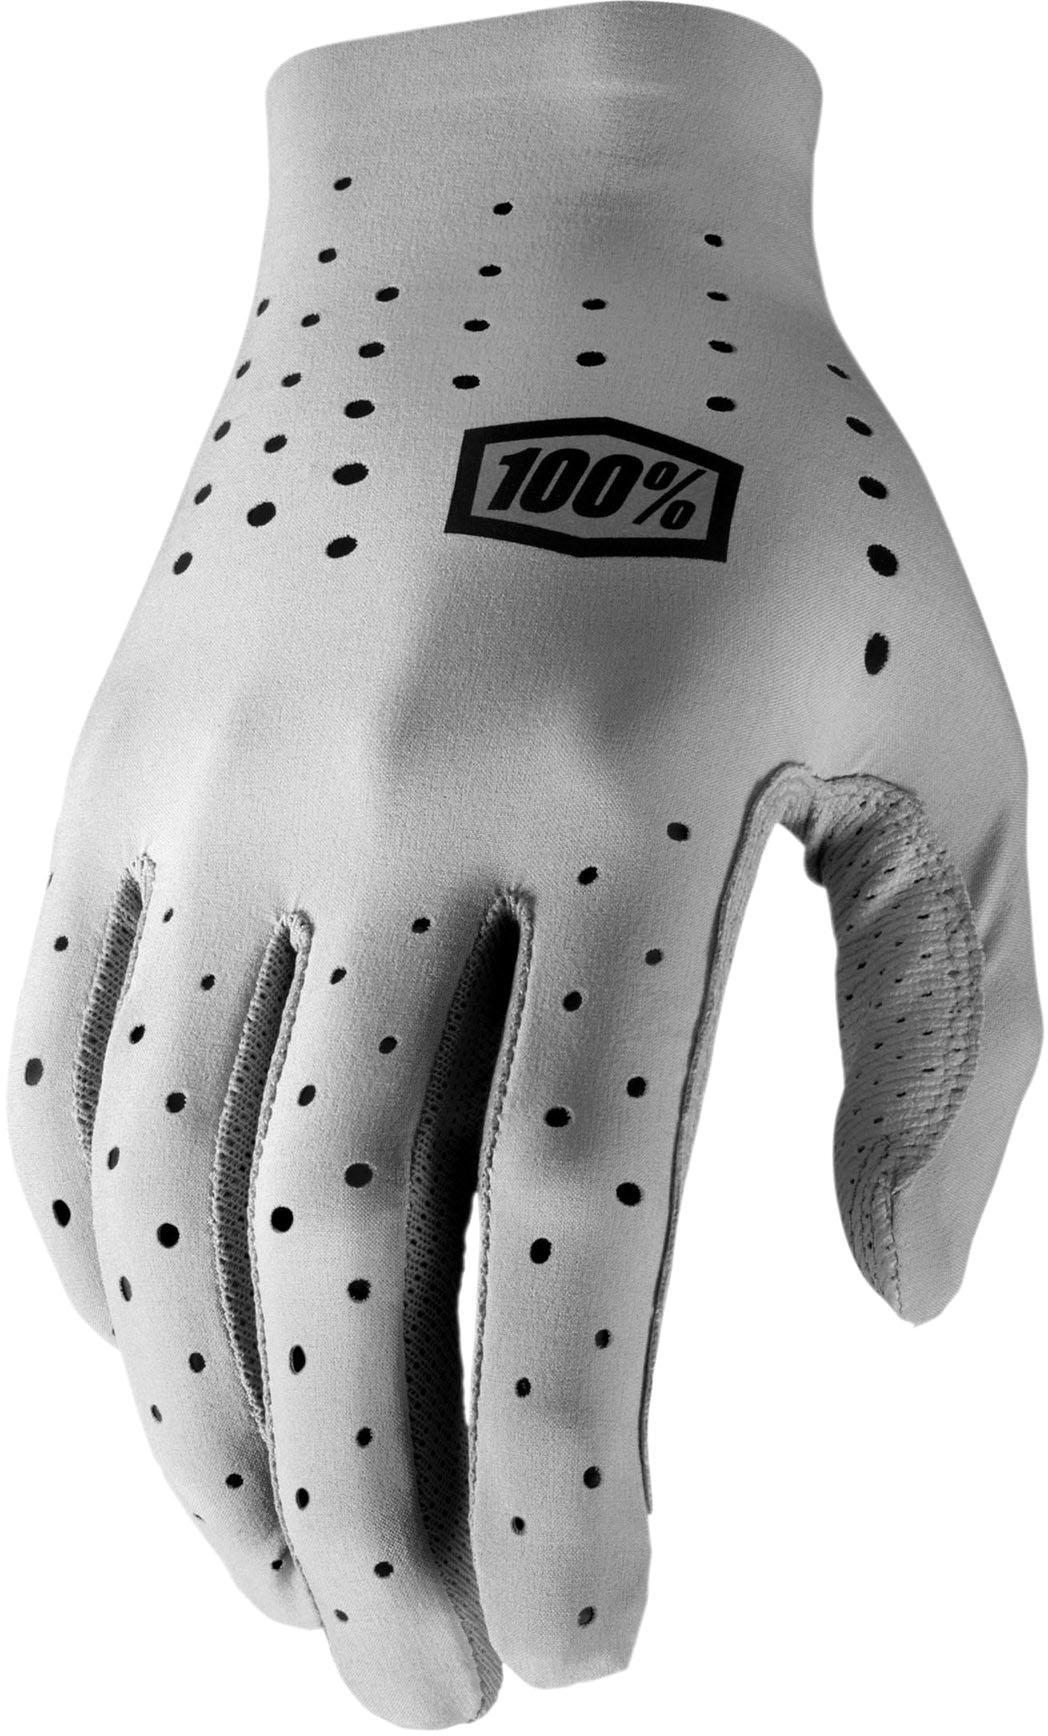 100% Sling Glove - Grey